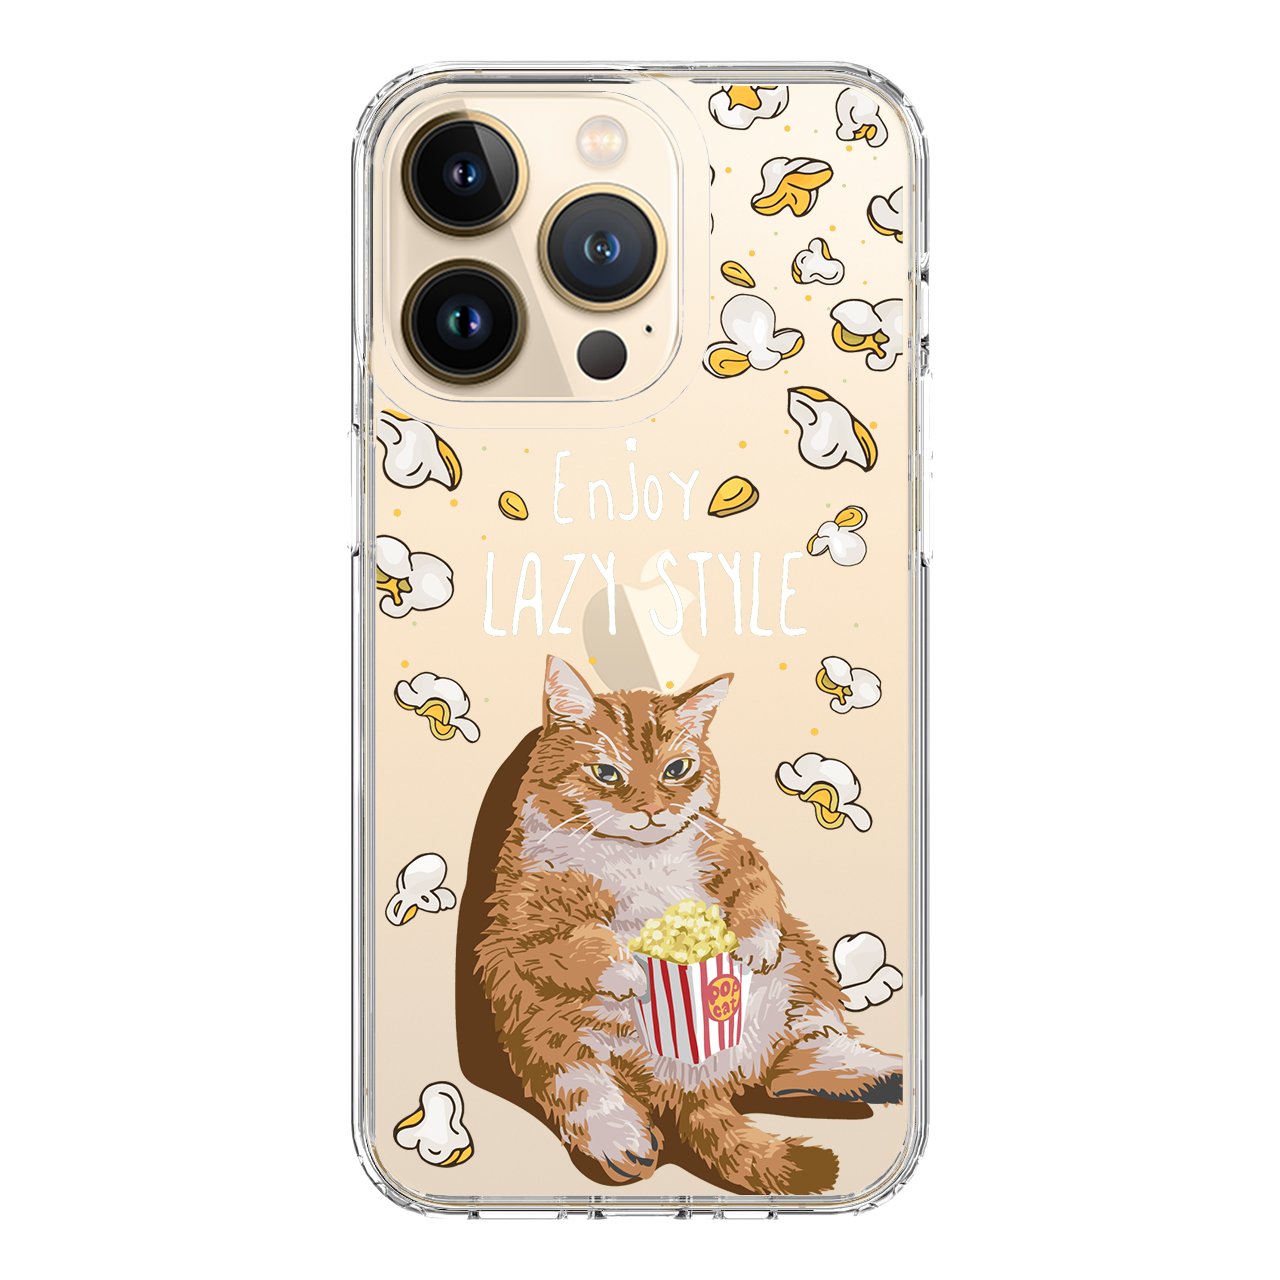 HI-SHIELD Stylish เคสใสกันกระแทก iPhone รุ่น Cattycat [เคส iPhone 13]